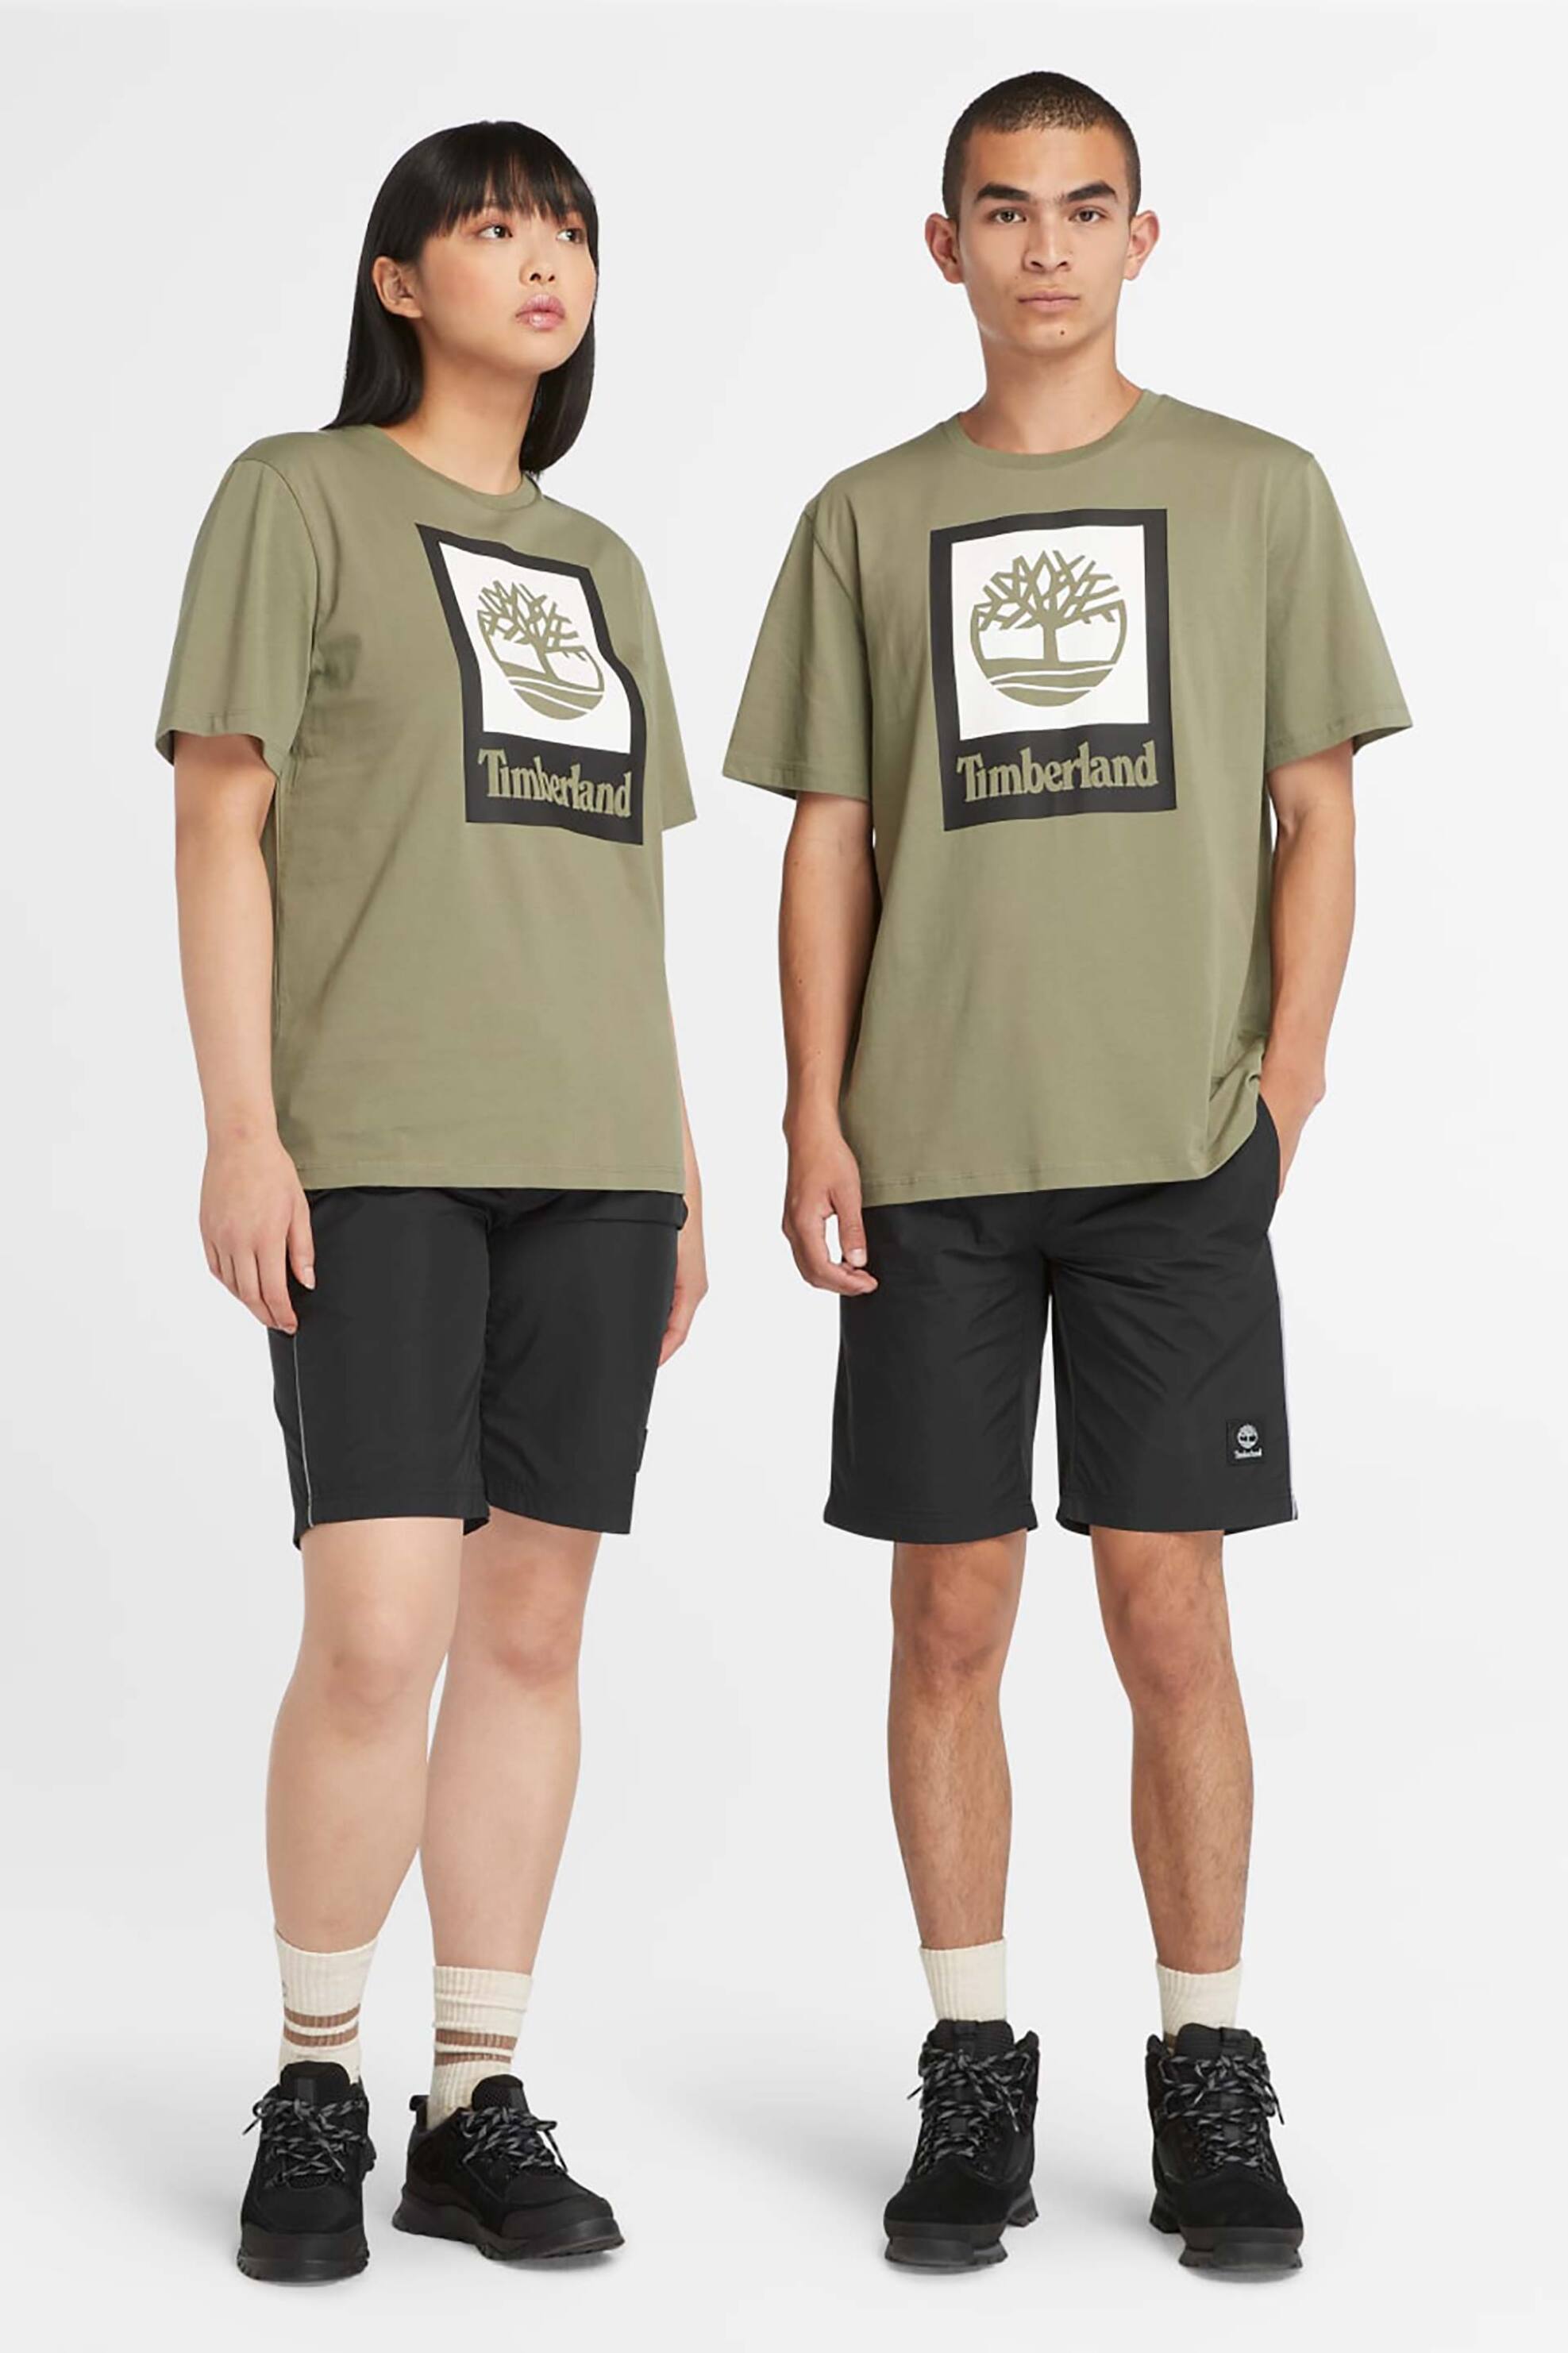 Ανδρική Μόδα > Ανδρικά Ρούχα > Ανδρικές Μπλούζες > Ανδρικά T-Shirts Timberland unisex T-shirt μονόχρωμο βαμβακερό με boxed logo και emblem print - TB0A5QS25901 Λαδί